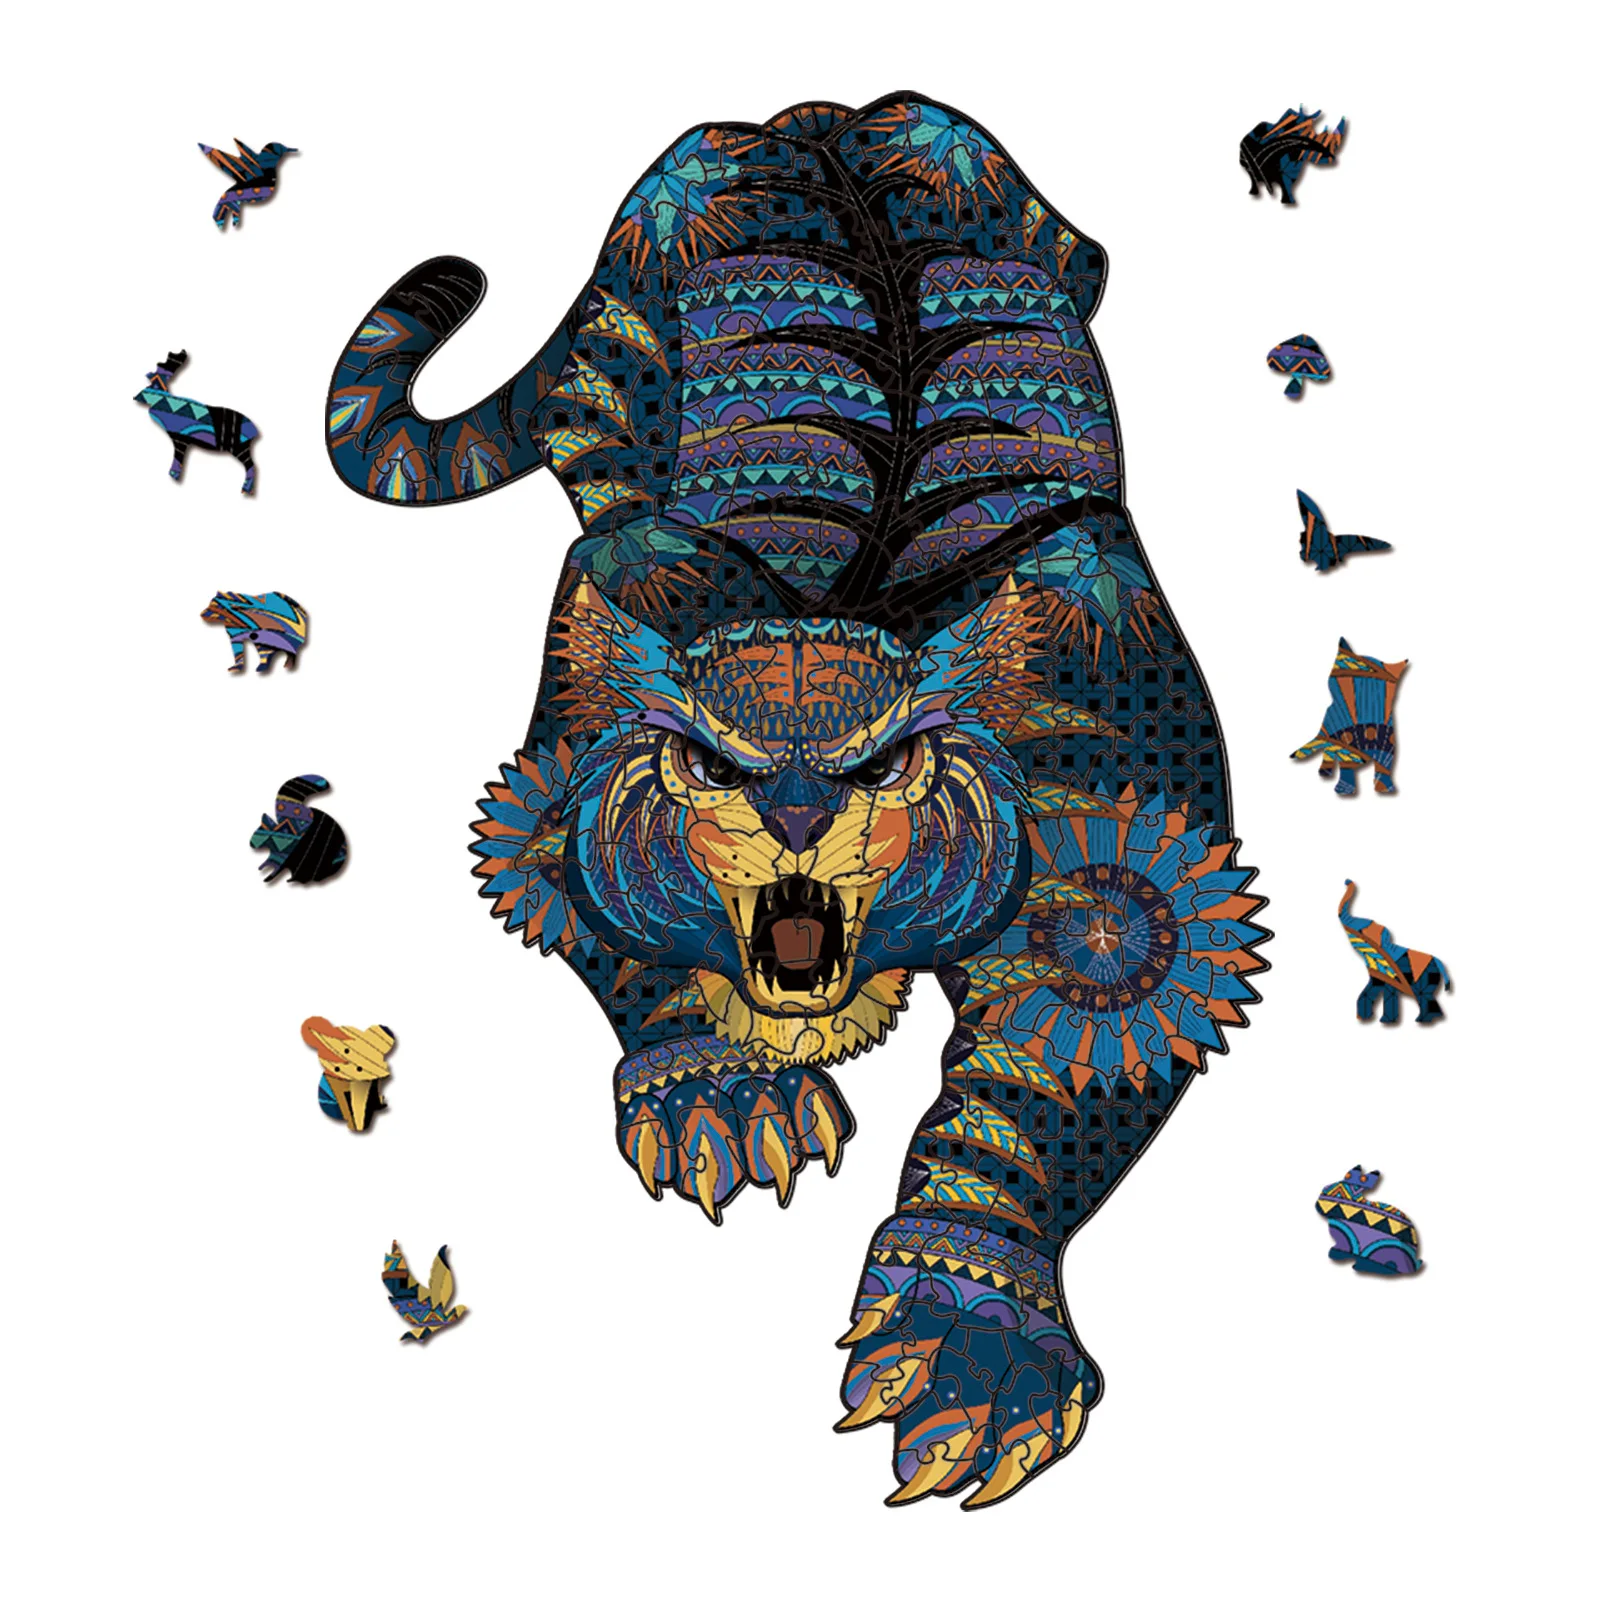 FEOOE A5 Размеры животных Король Лев серии 3D деревянные головоломки животные